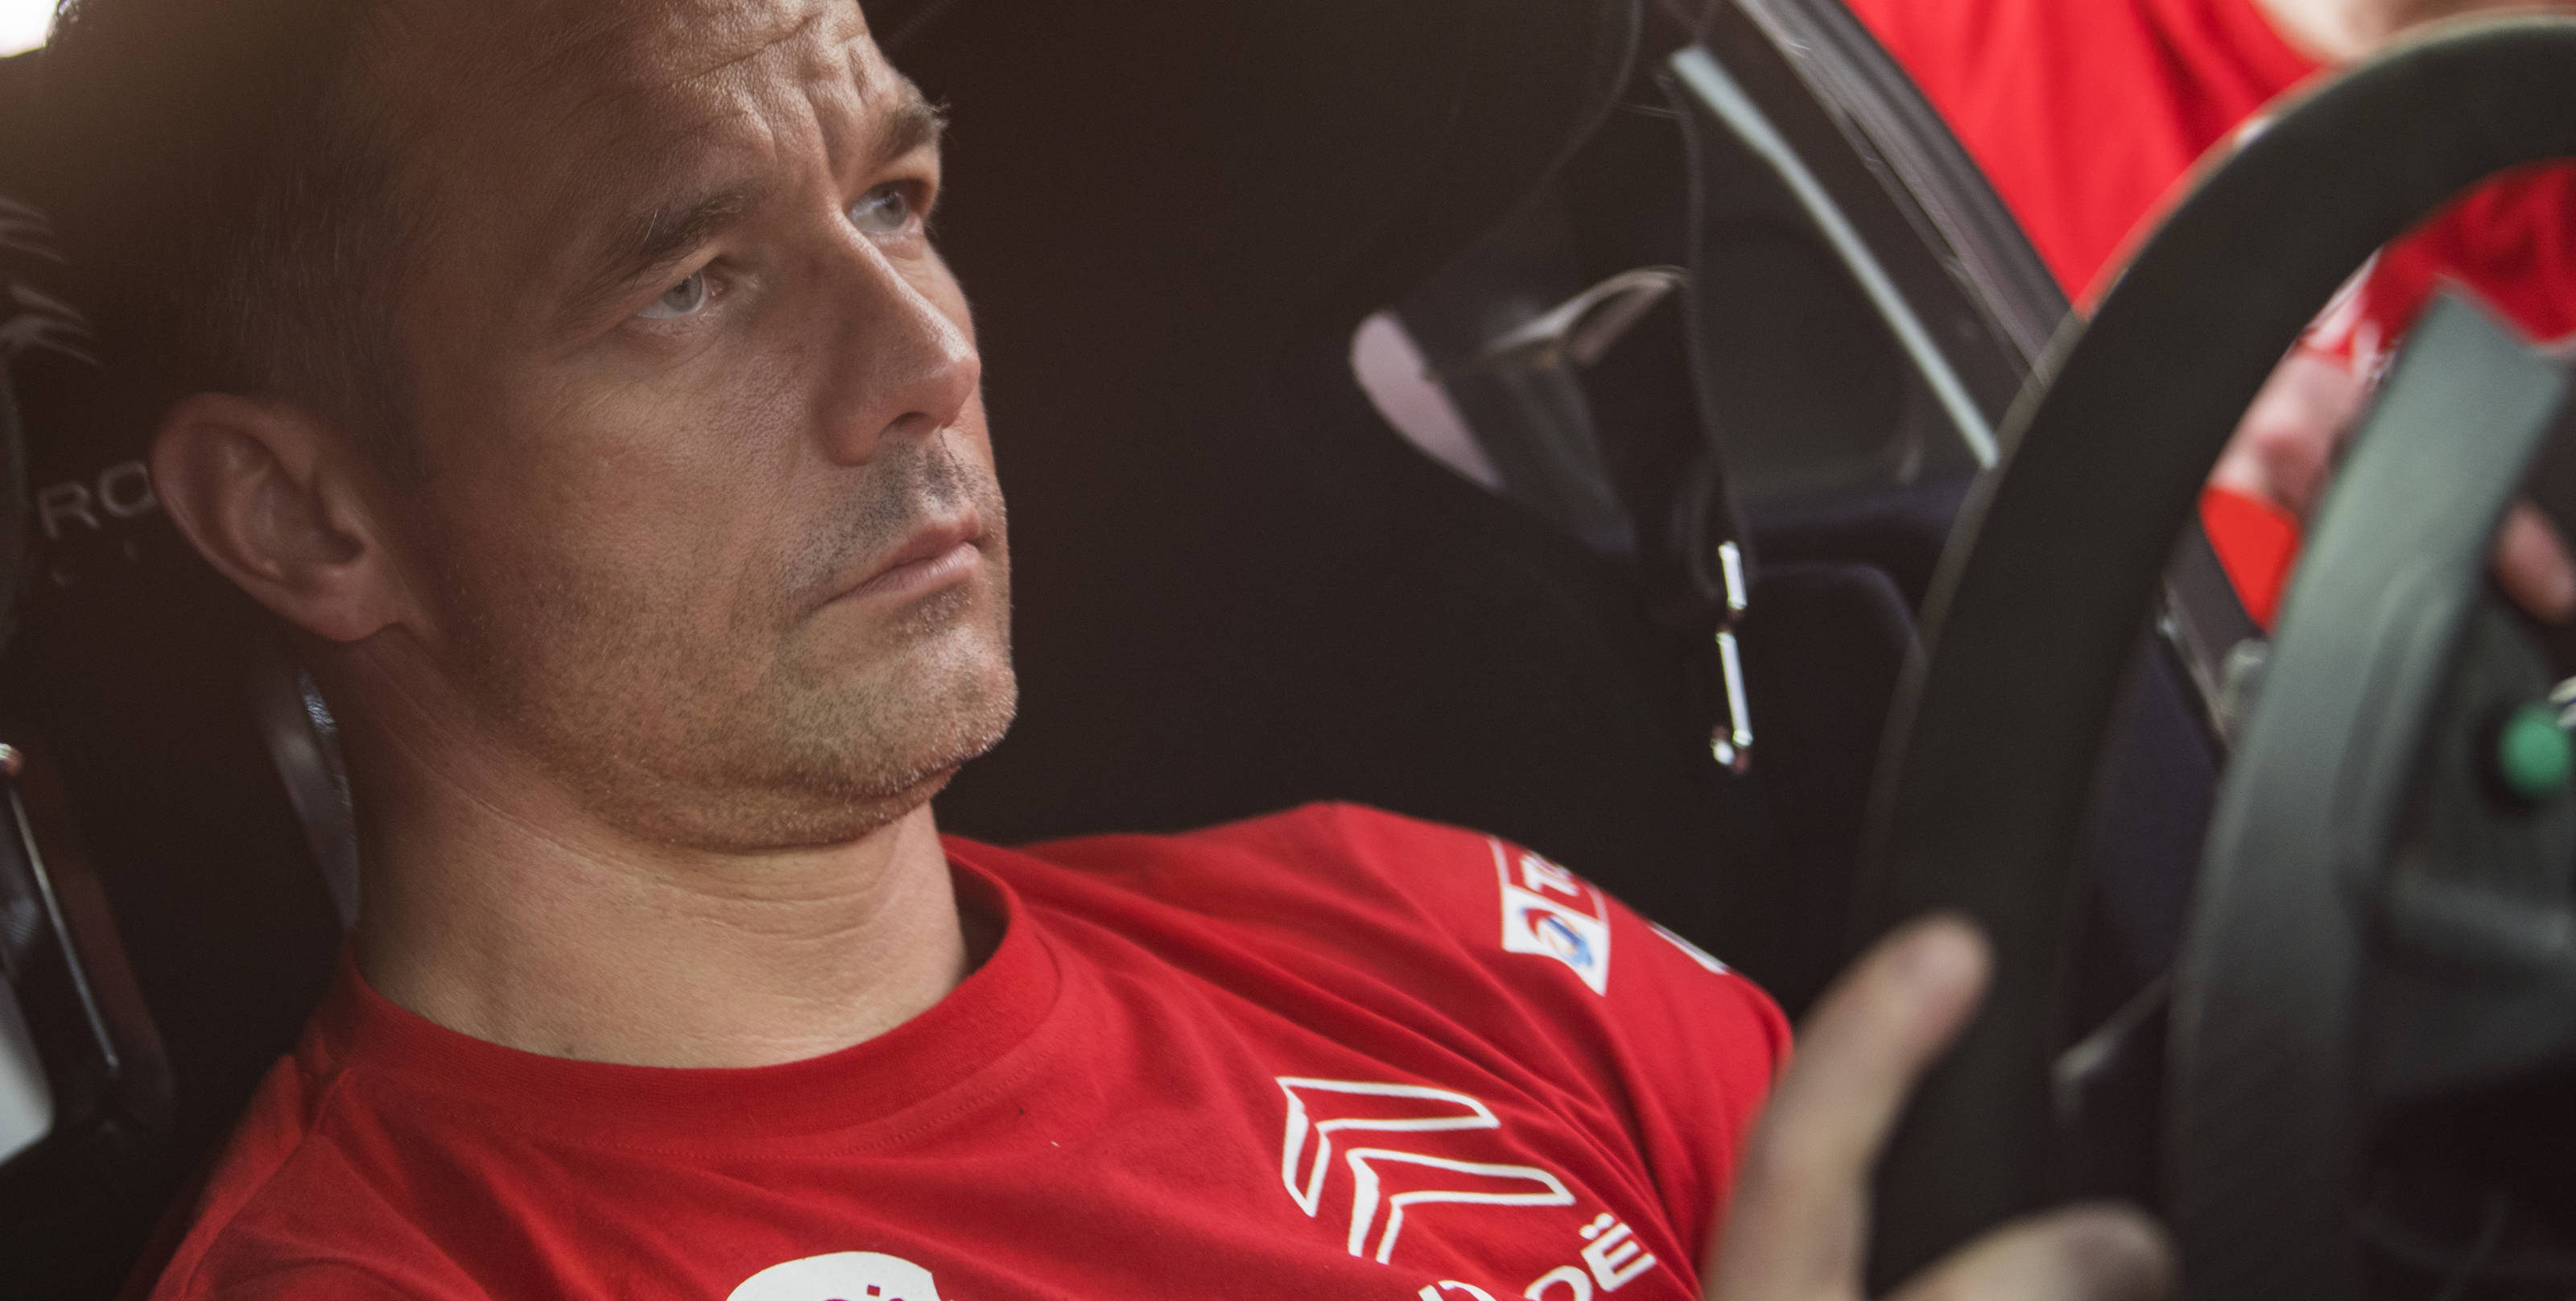 WRC: Co może przekonać Loeba do powrotu w 2019?